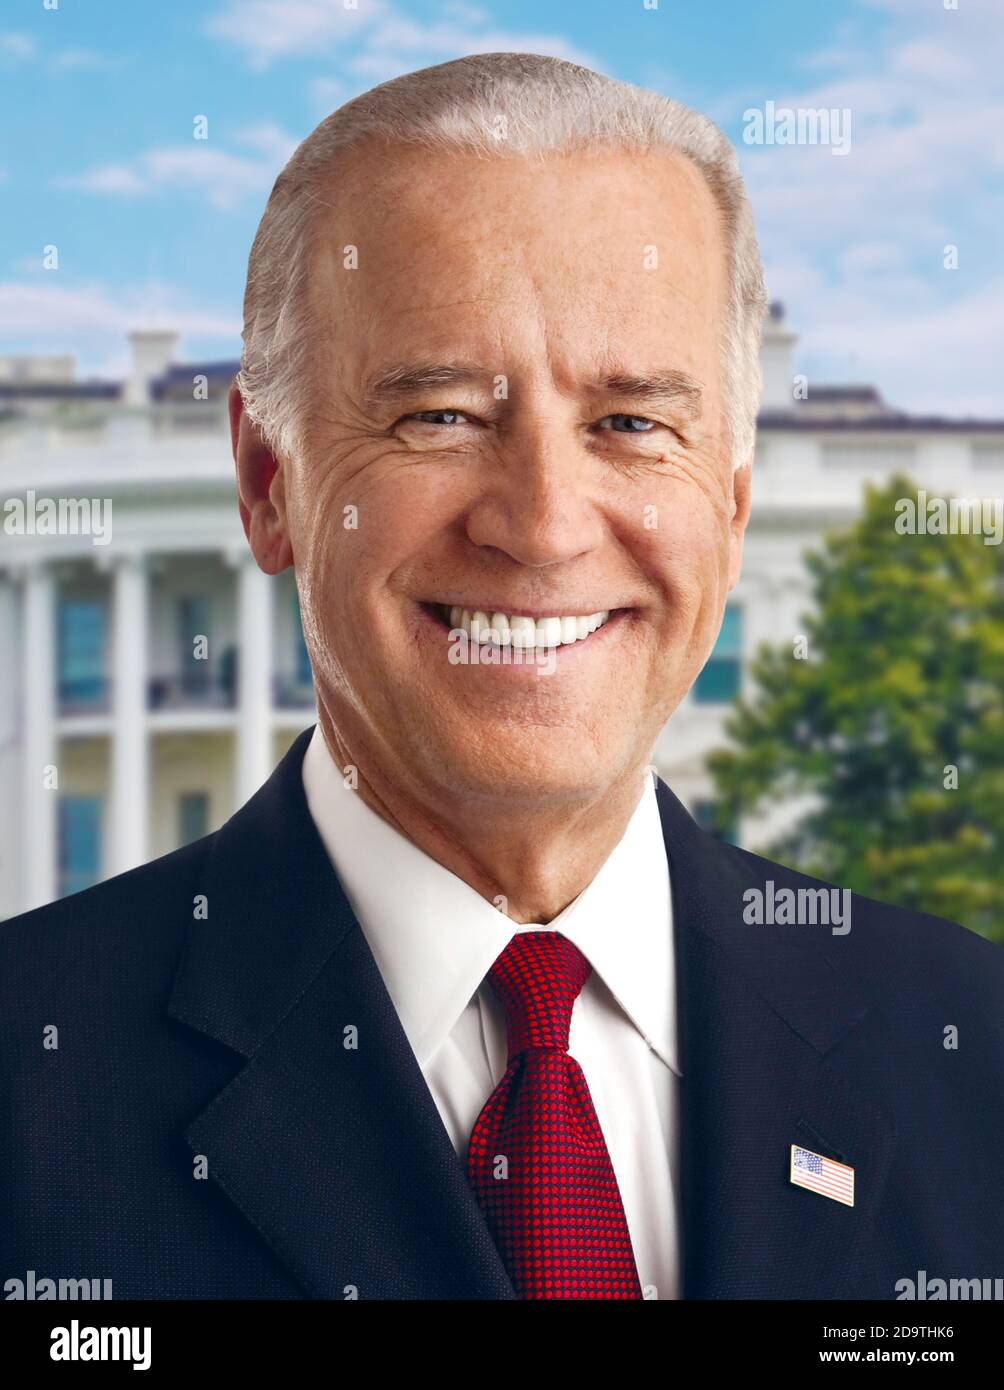 POTUS, il 46 ° presidente degli Stati Uniti, ha eletto Joe Biden: Ritratto di Andrew 'Andy' Cutraro. Foto Stock